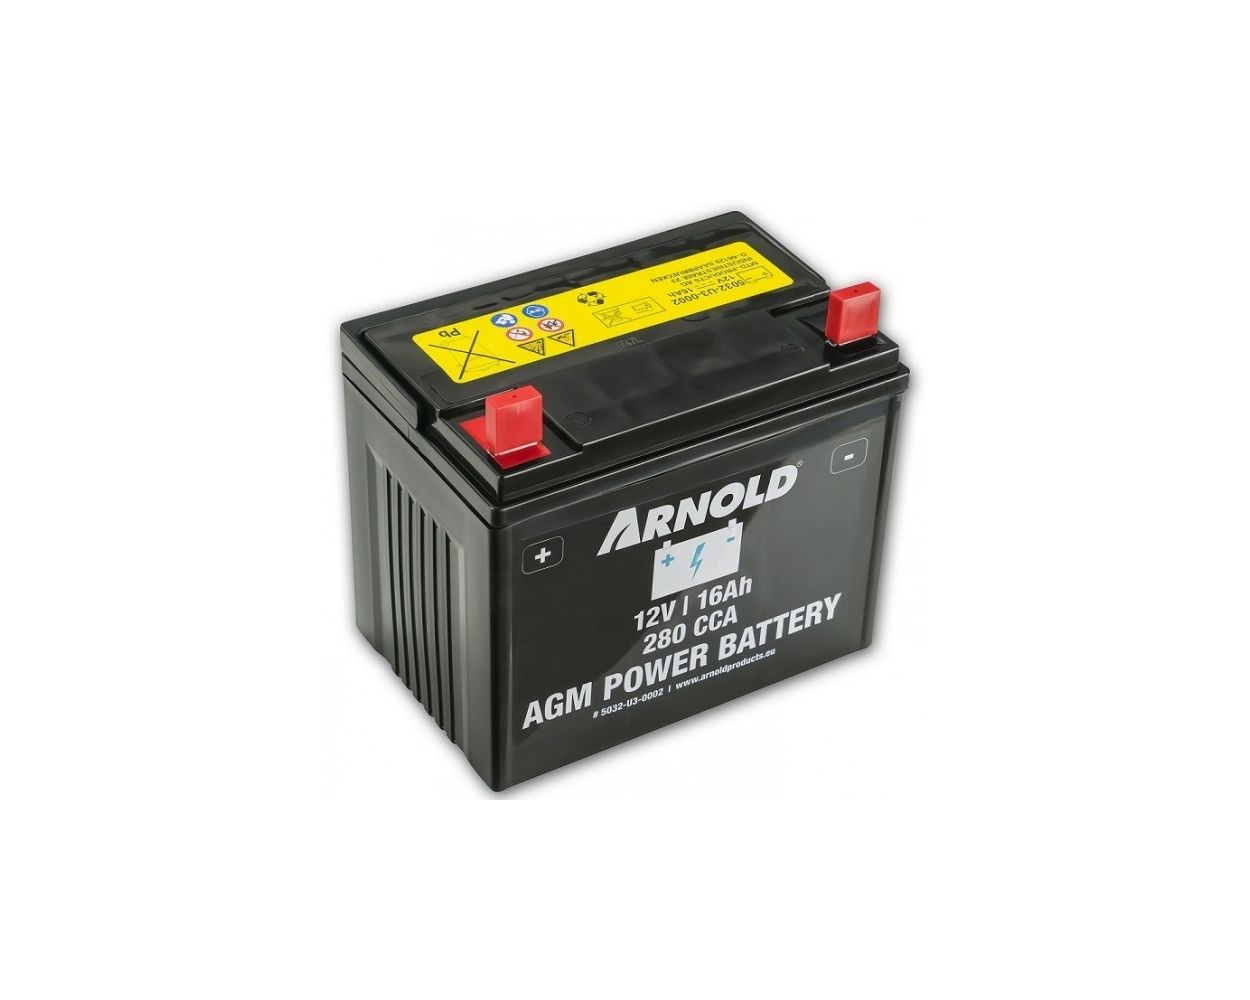 Batterie pour tracteur tondeuse Arnold 5032-U3-0010 20Ah